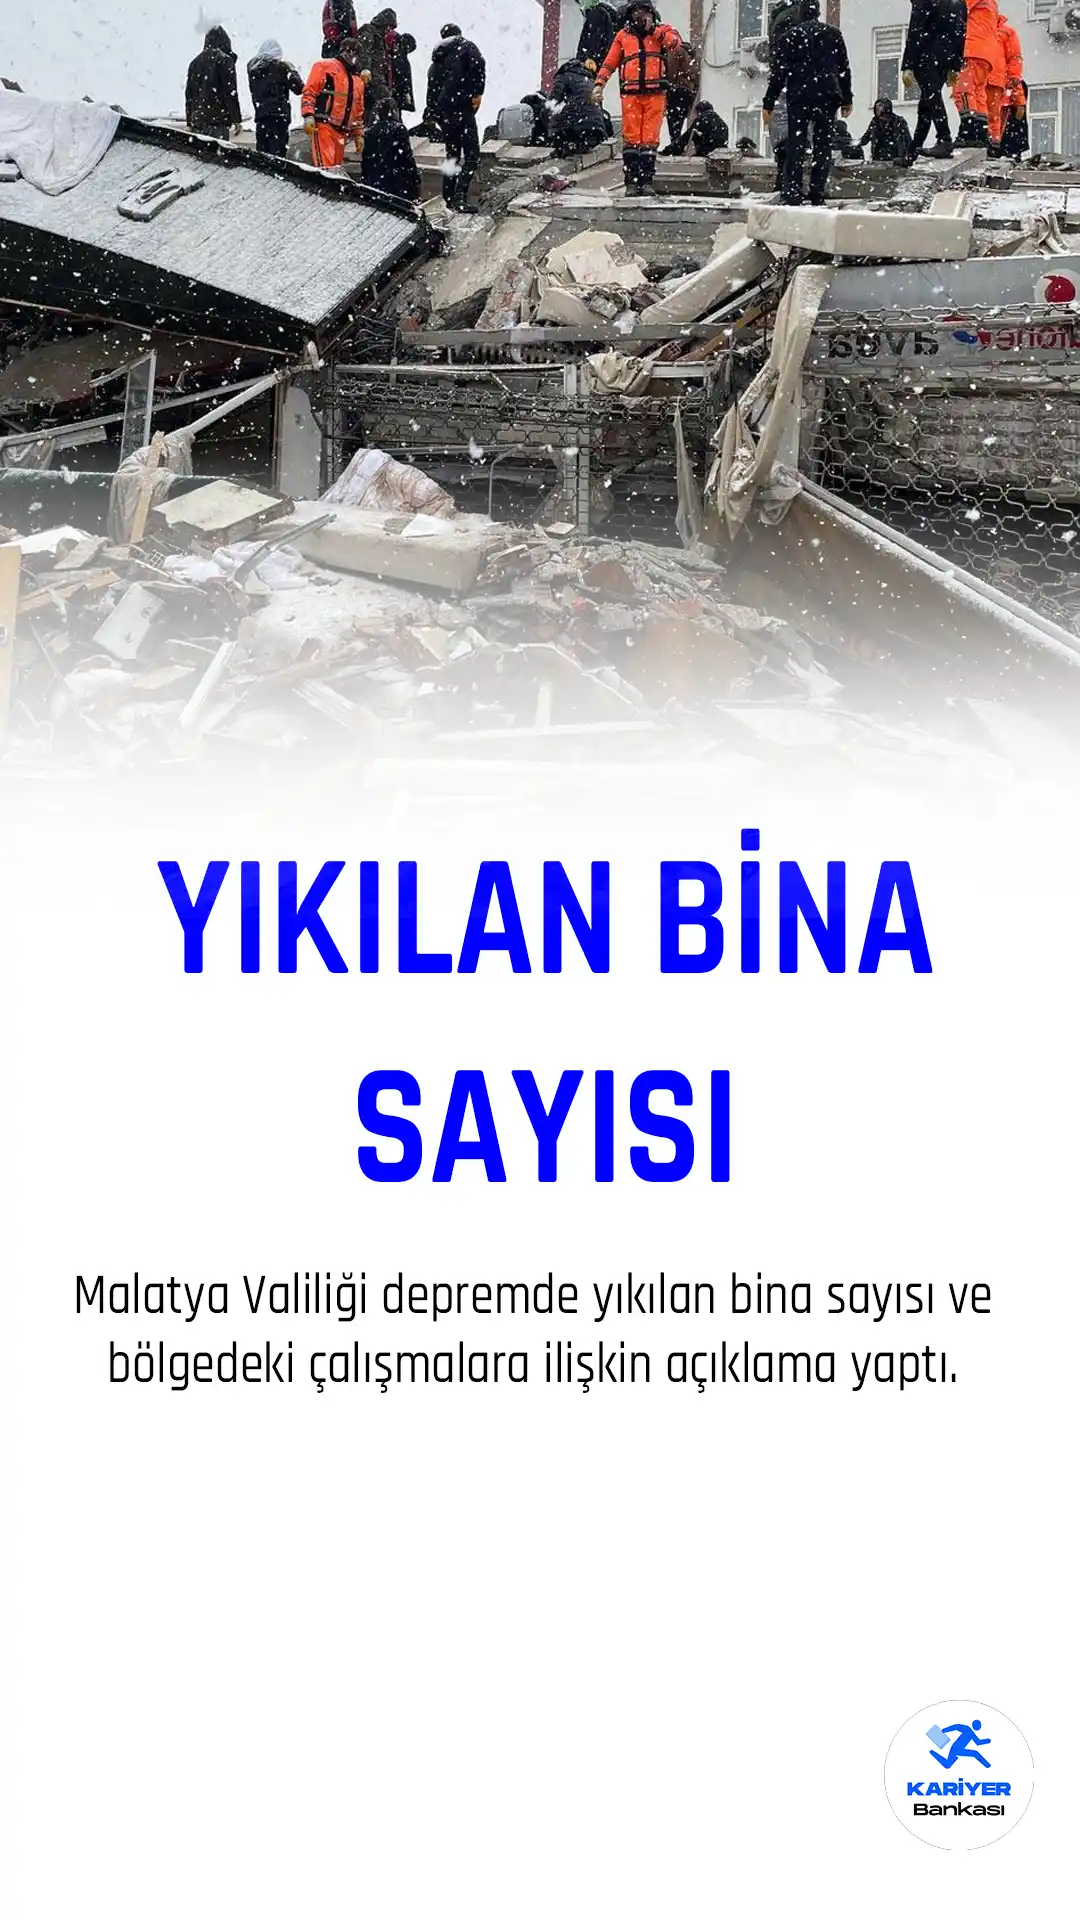 Malatya Valiliği depremde yıkılan bina sayısını açıkladı.